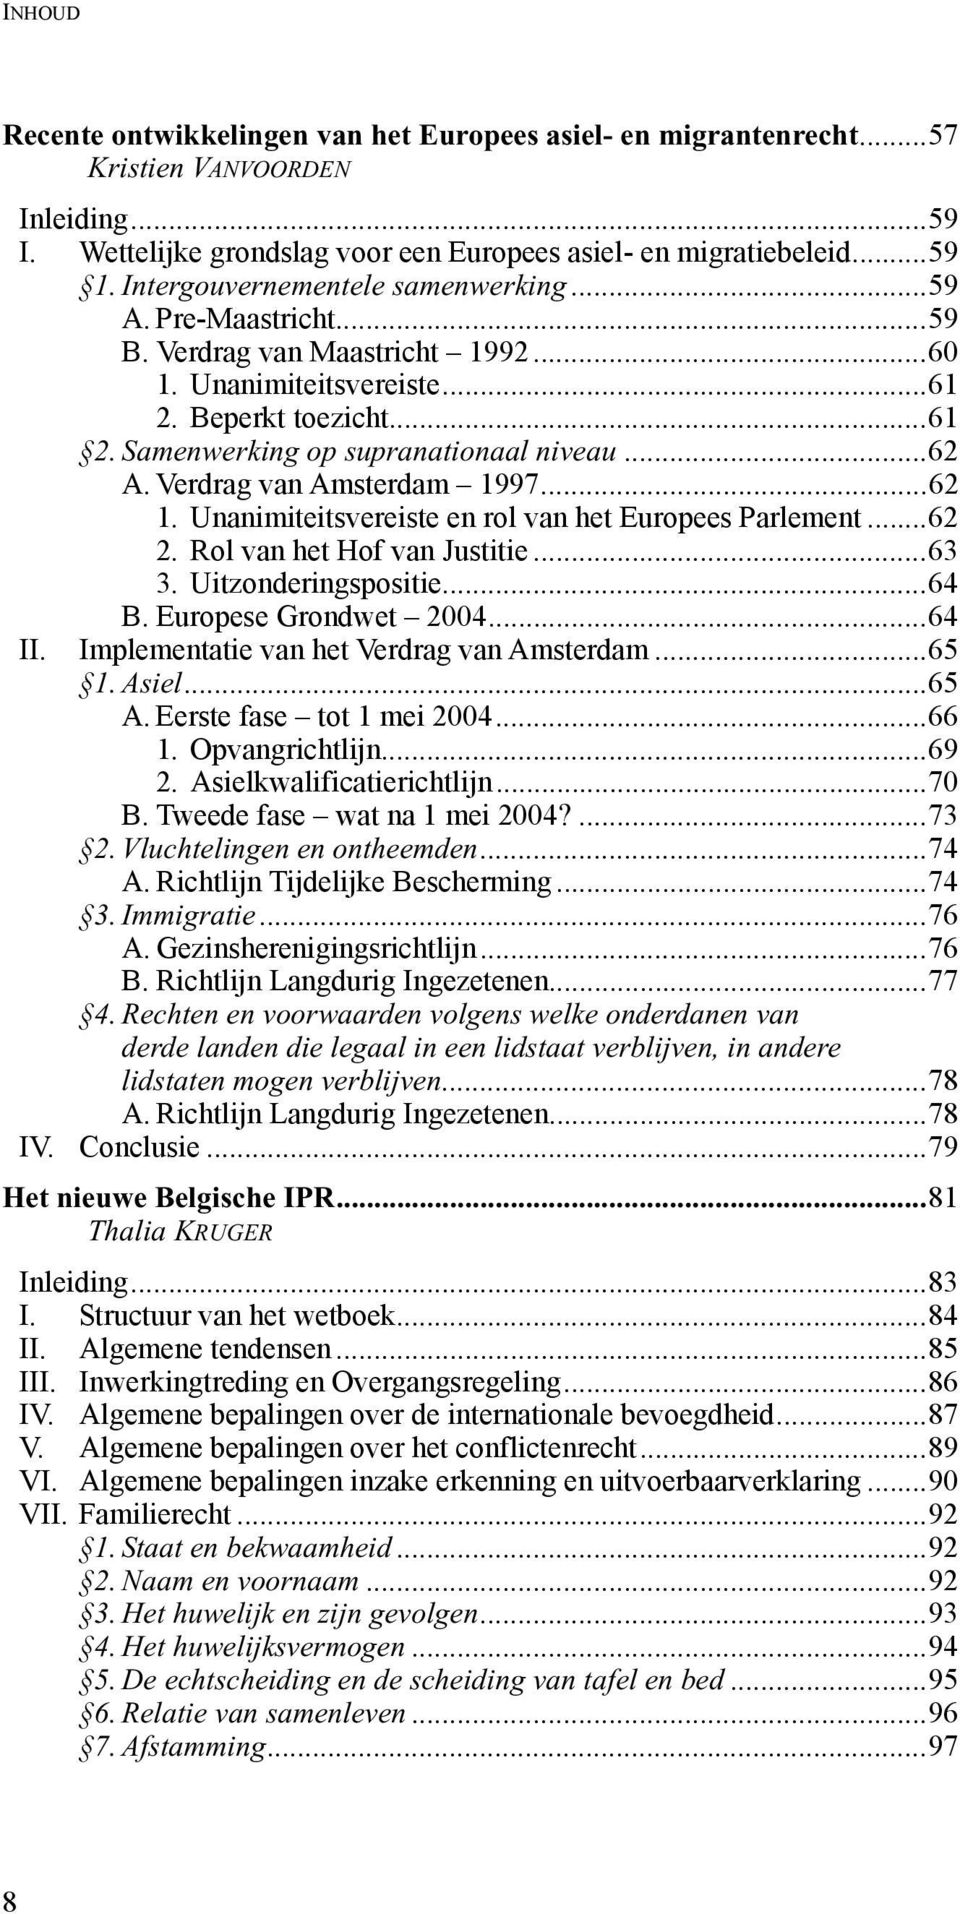 Verdrag van Amsterdam 1997...62 1. Unanimiteitsvereiste en rol van het Europees Parlement...62 2. Rol van het Hof van Justitie...63 3. Uitzonderingspositie...64 B. Europese Grondwet 2004...64 II.